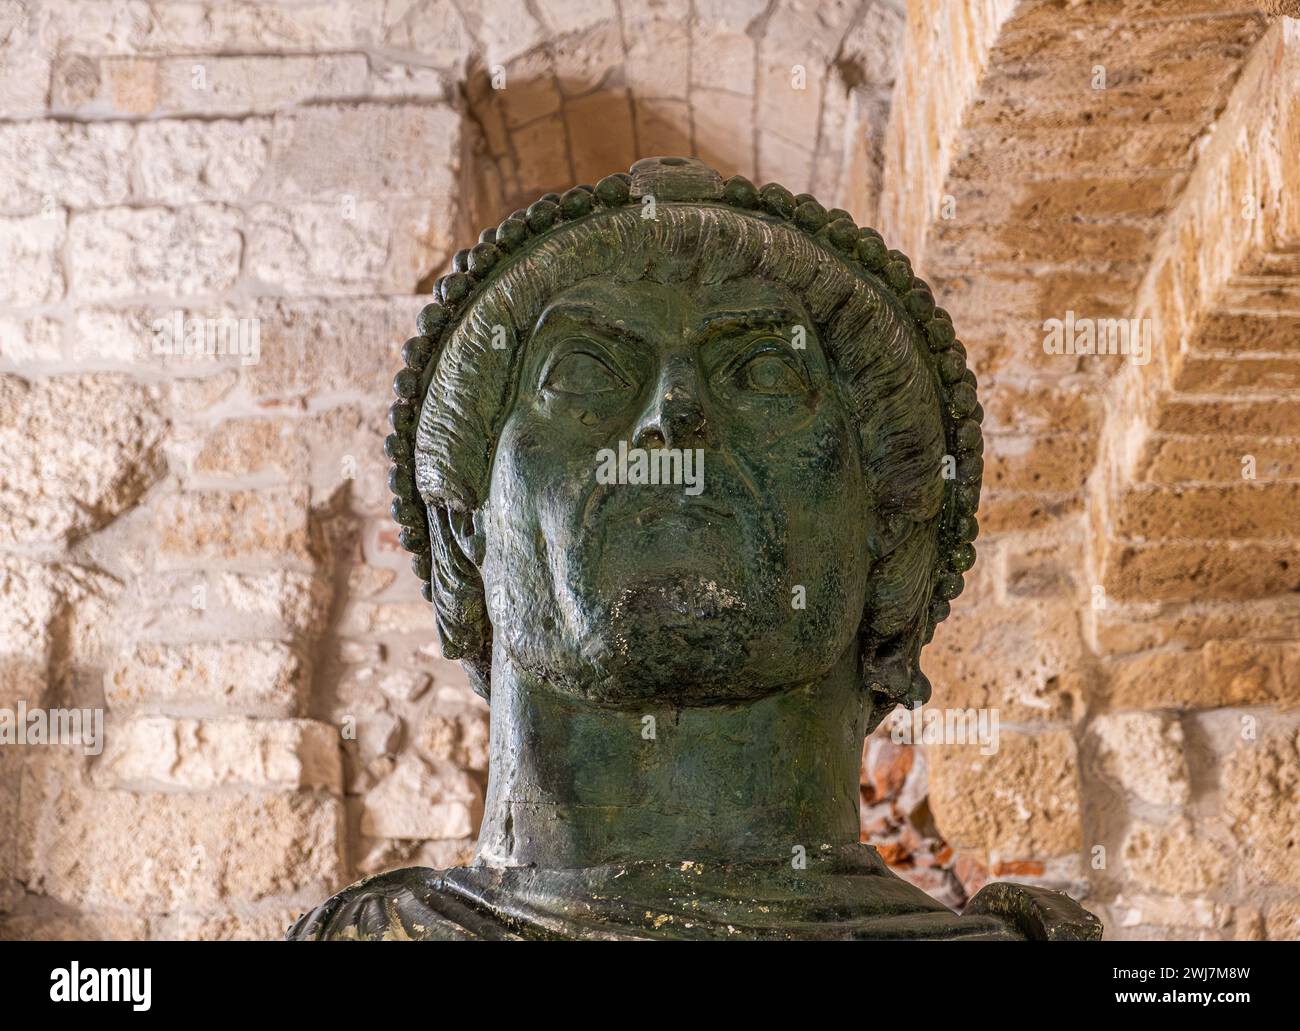 Eraclio head  ( colosso di Barletta) at the plaster cast gallery of the Norman Swabian Castle ( Castello Normanno Svevo), Bari, Puglia region, (Apulia Stock Photo